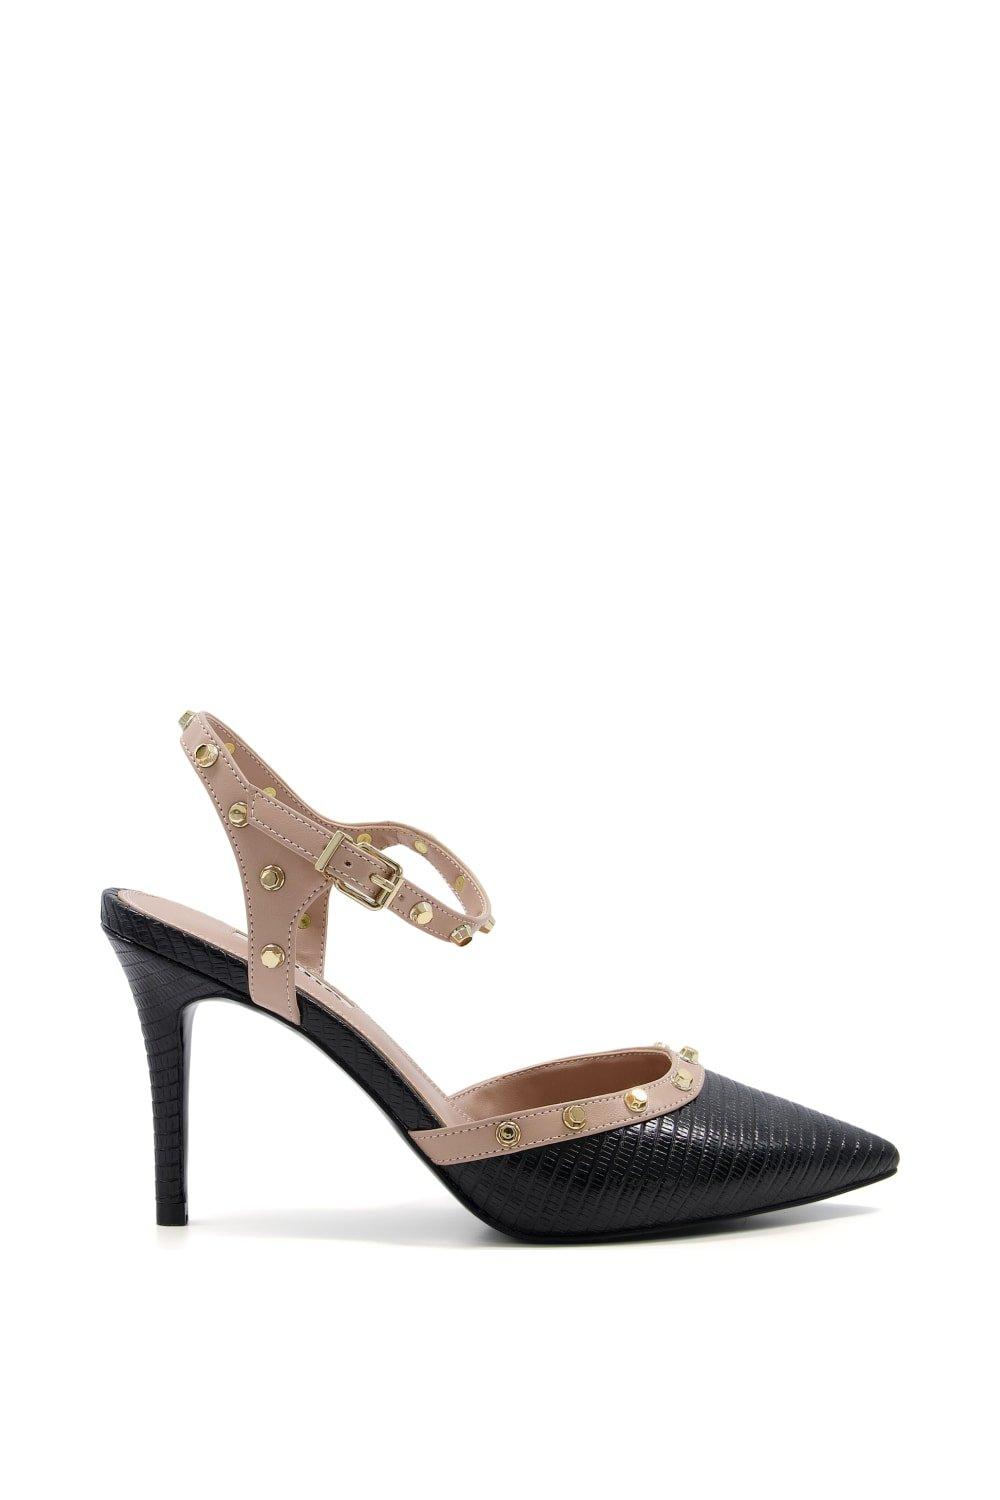 Heels | 'Caylee' Court Shoes | Dune London